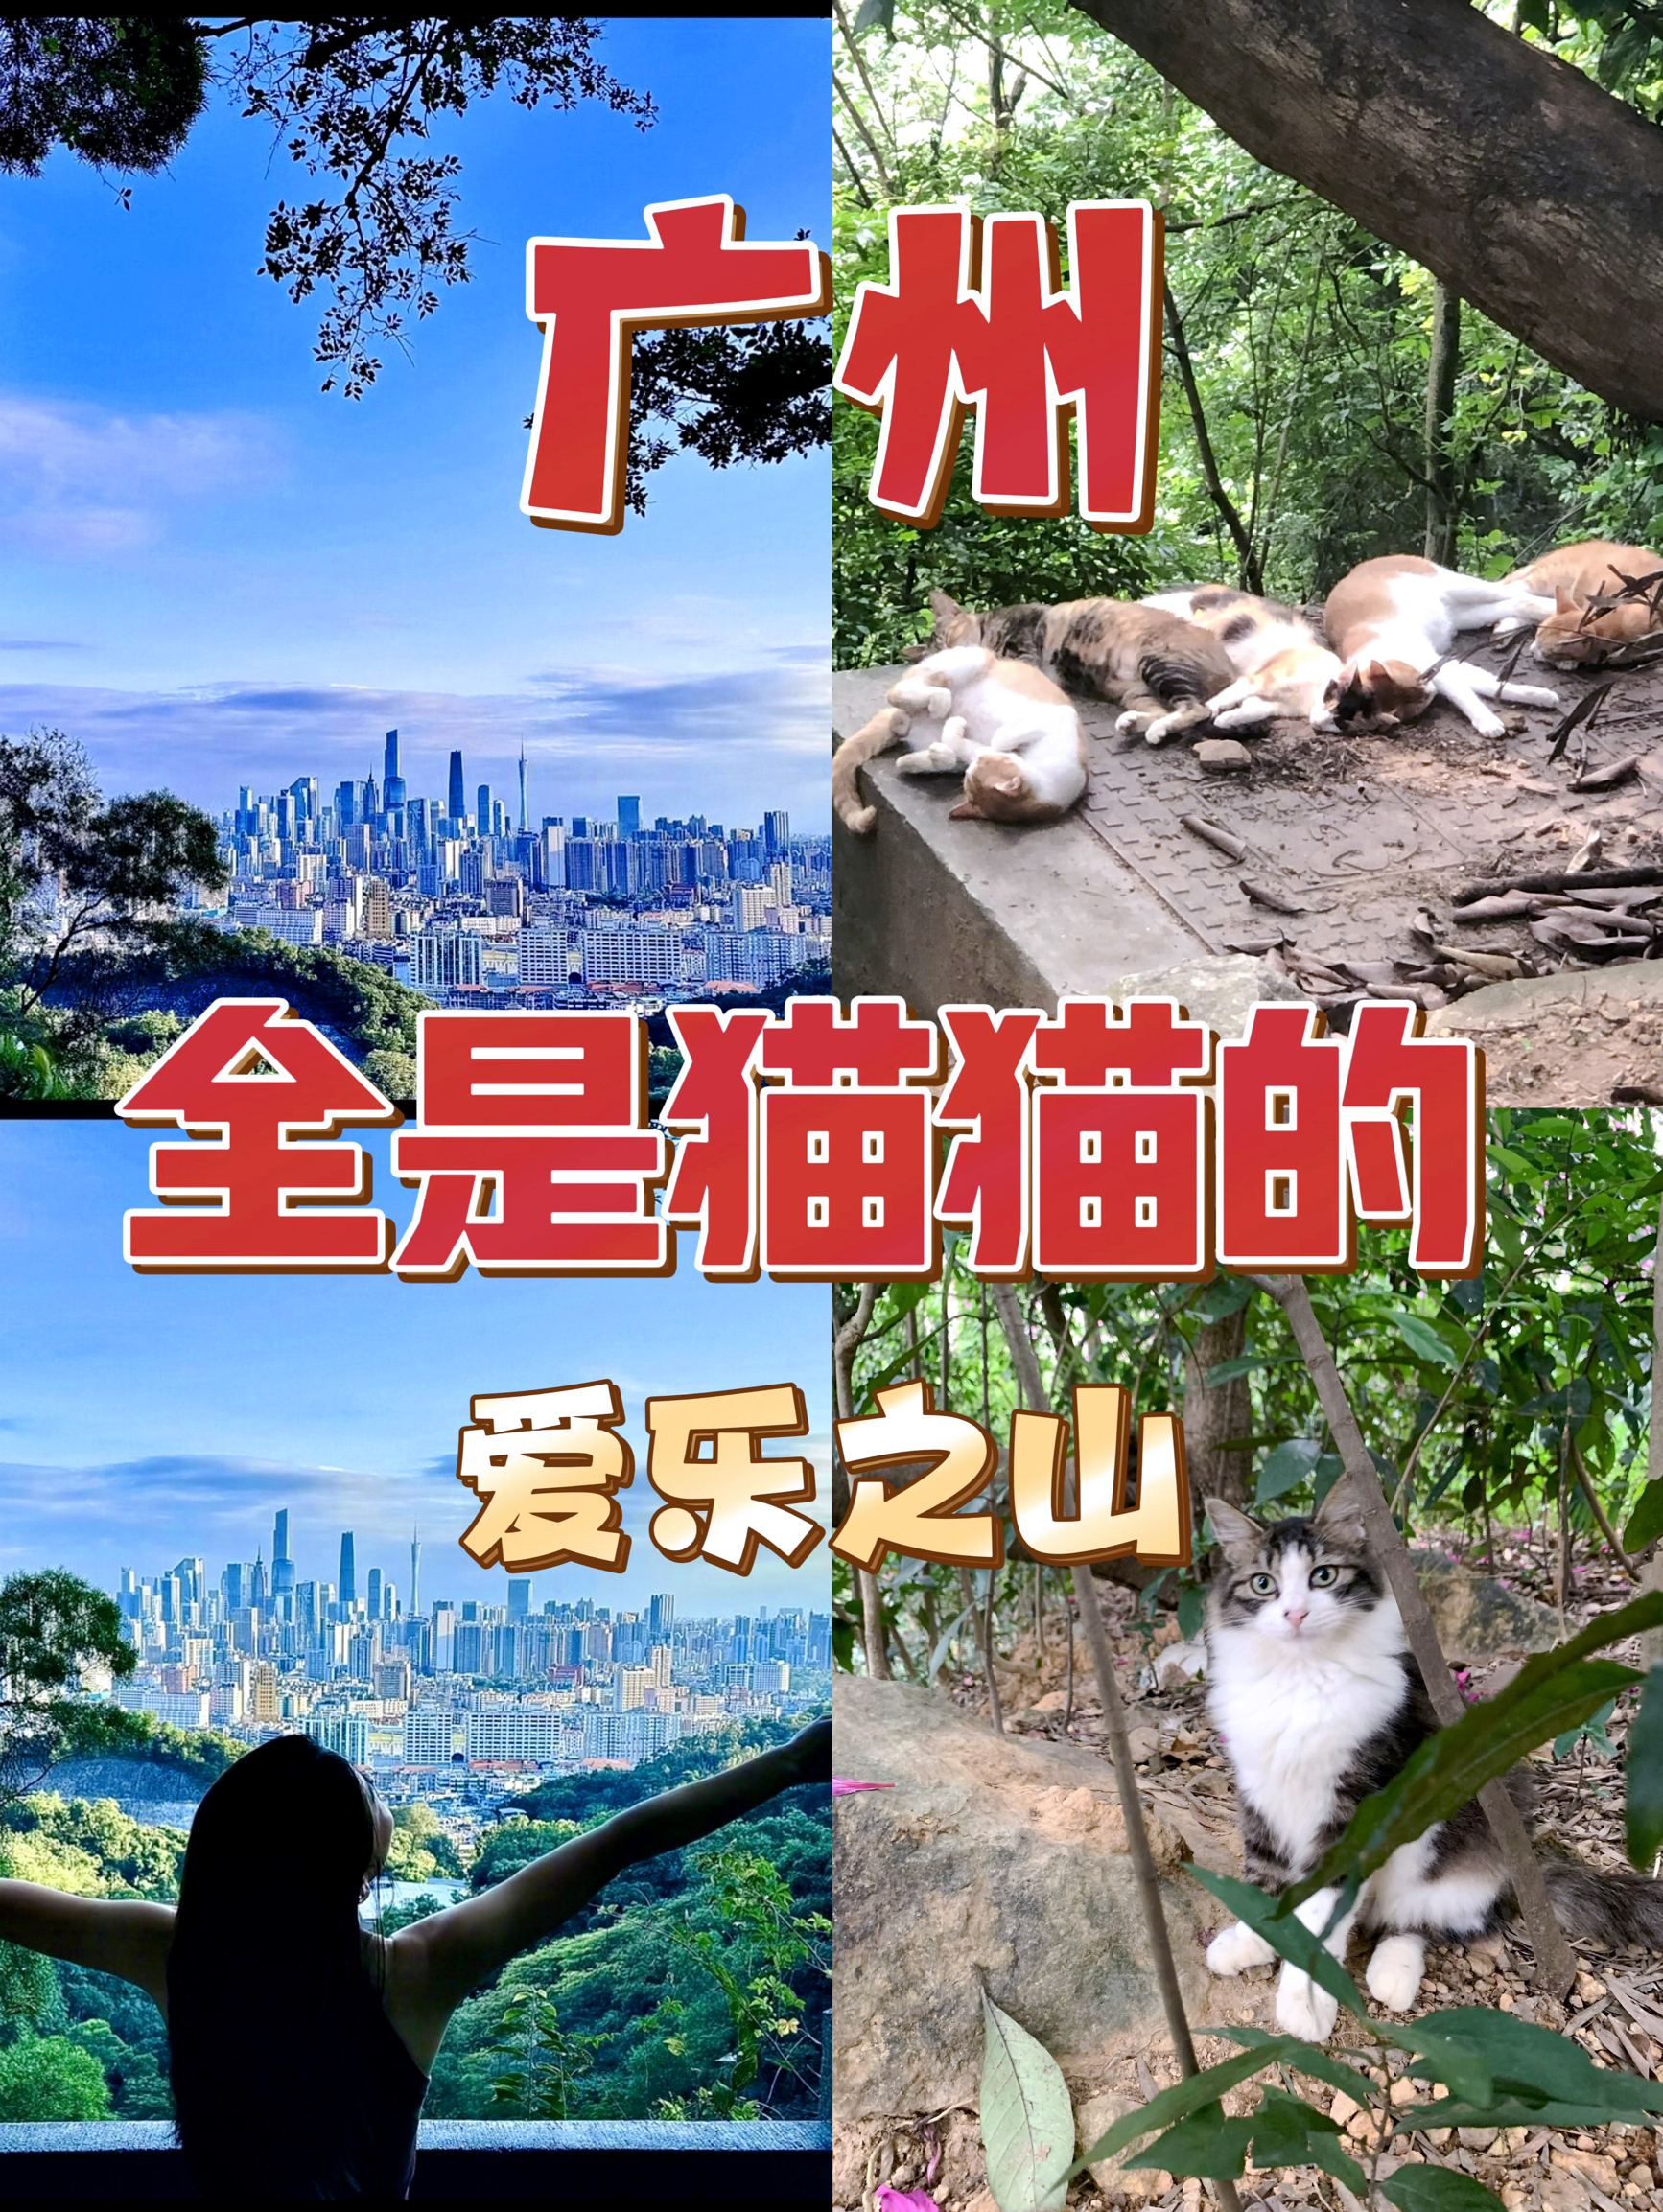 猫咪天堂，广州的爱乐之城+撸猫圣地